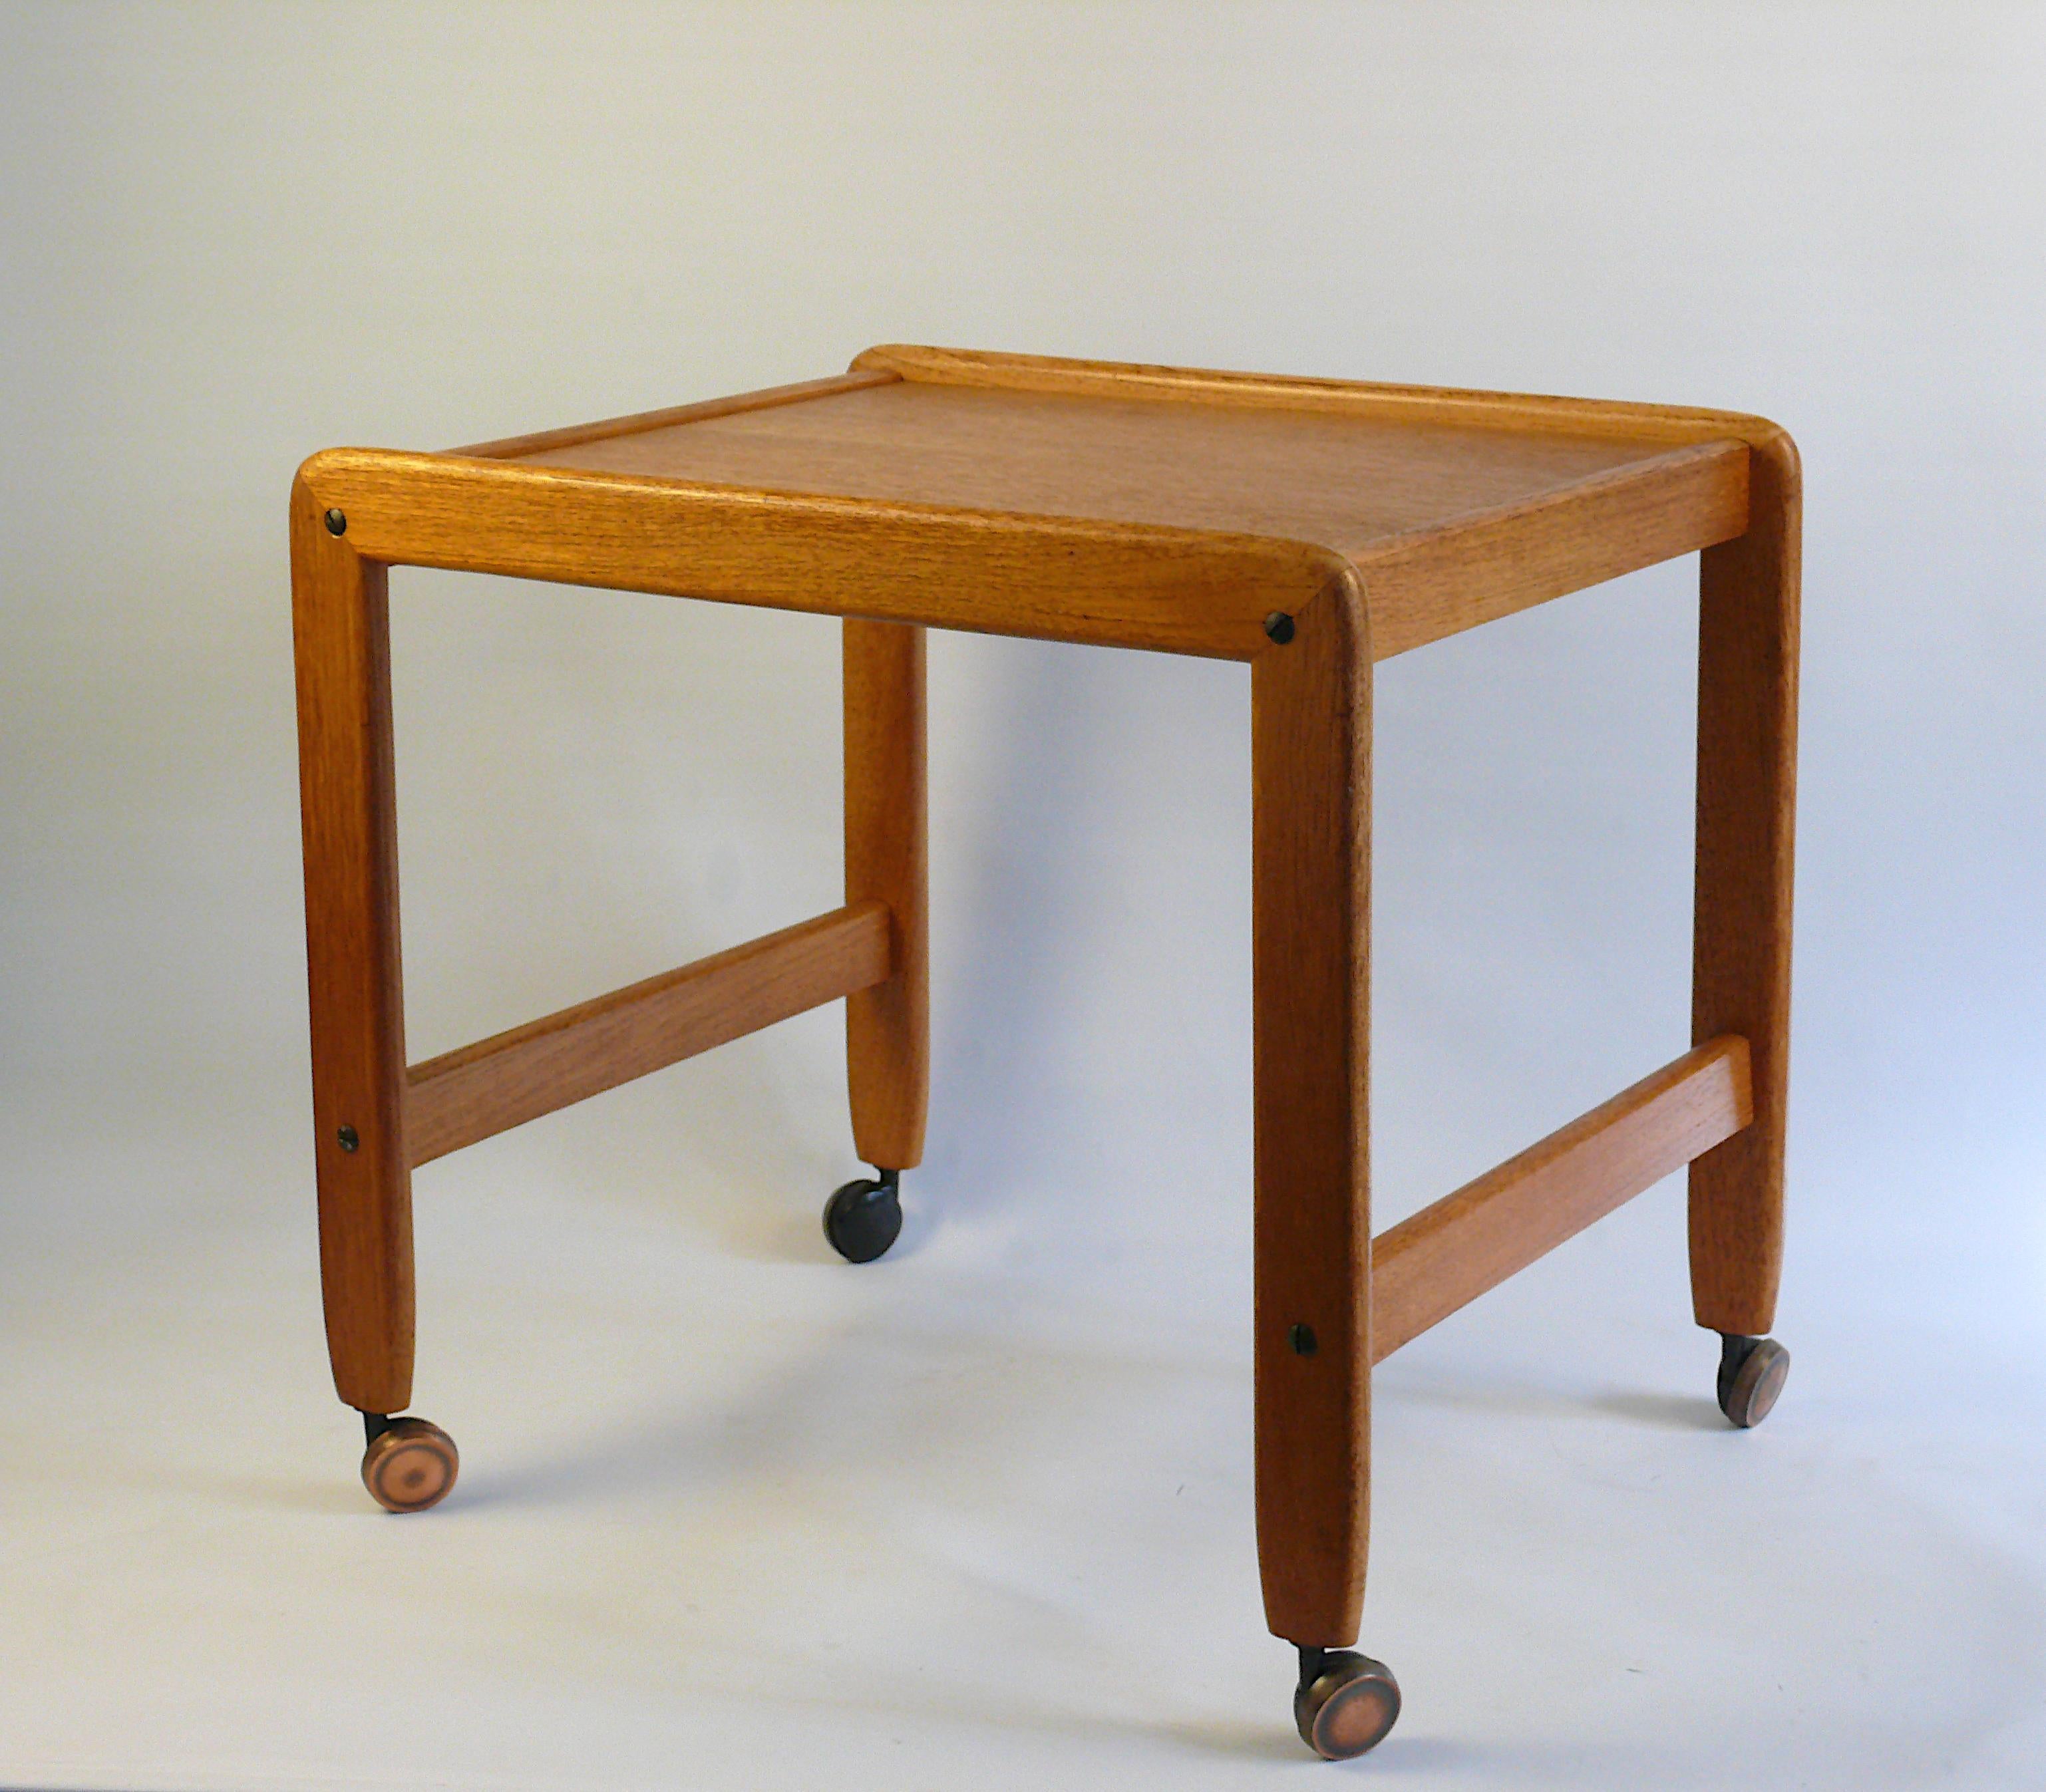 Table d'appoint/chariot de service en teck bien conservé, de conception danoise des années 1960. Les profils en bois ont des bords arrondis. La table est vissée et peut être démontée si nécessaire - elle est envoyée assemblée. La table est en bon